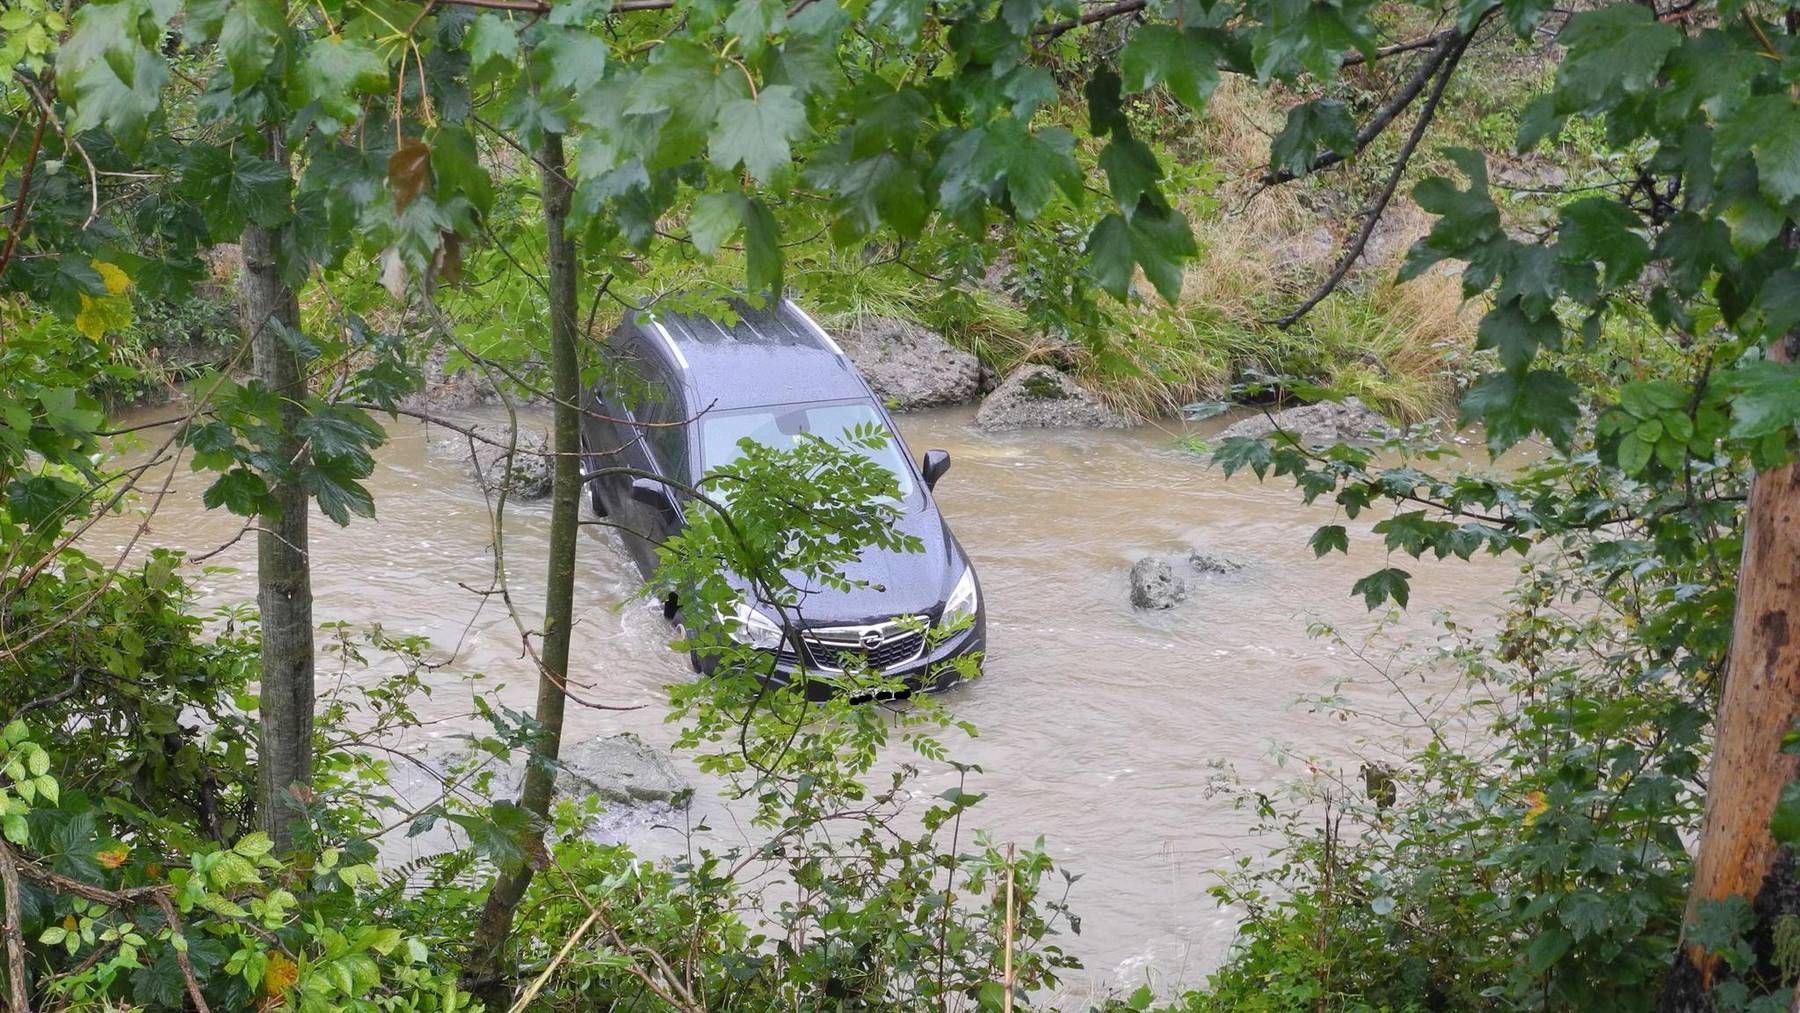 Der Opel landete im Wasser.